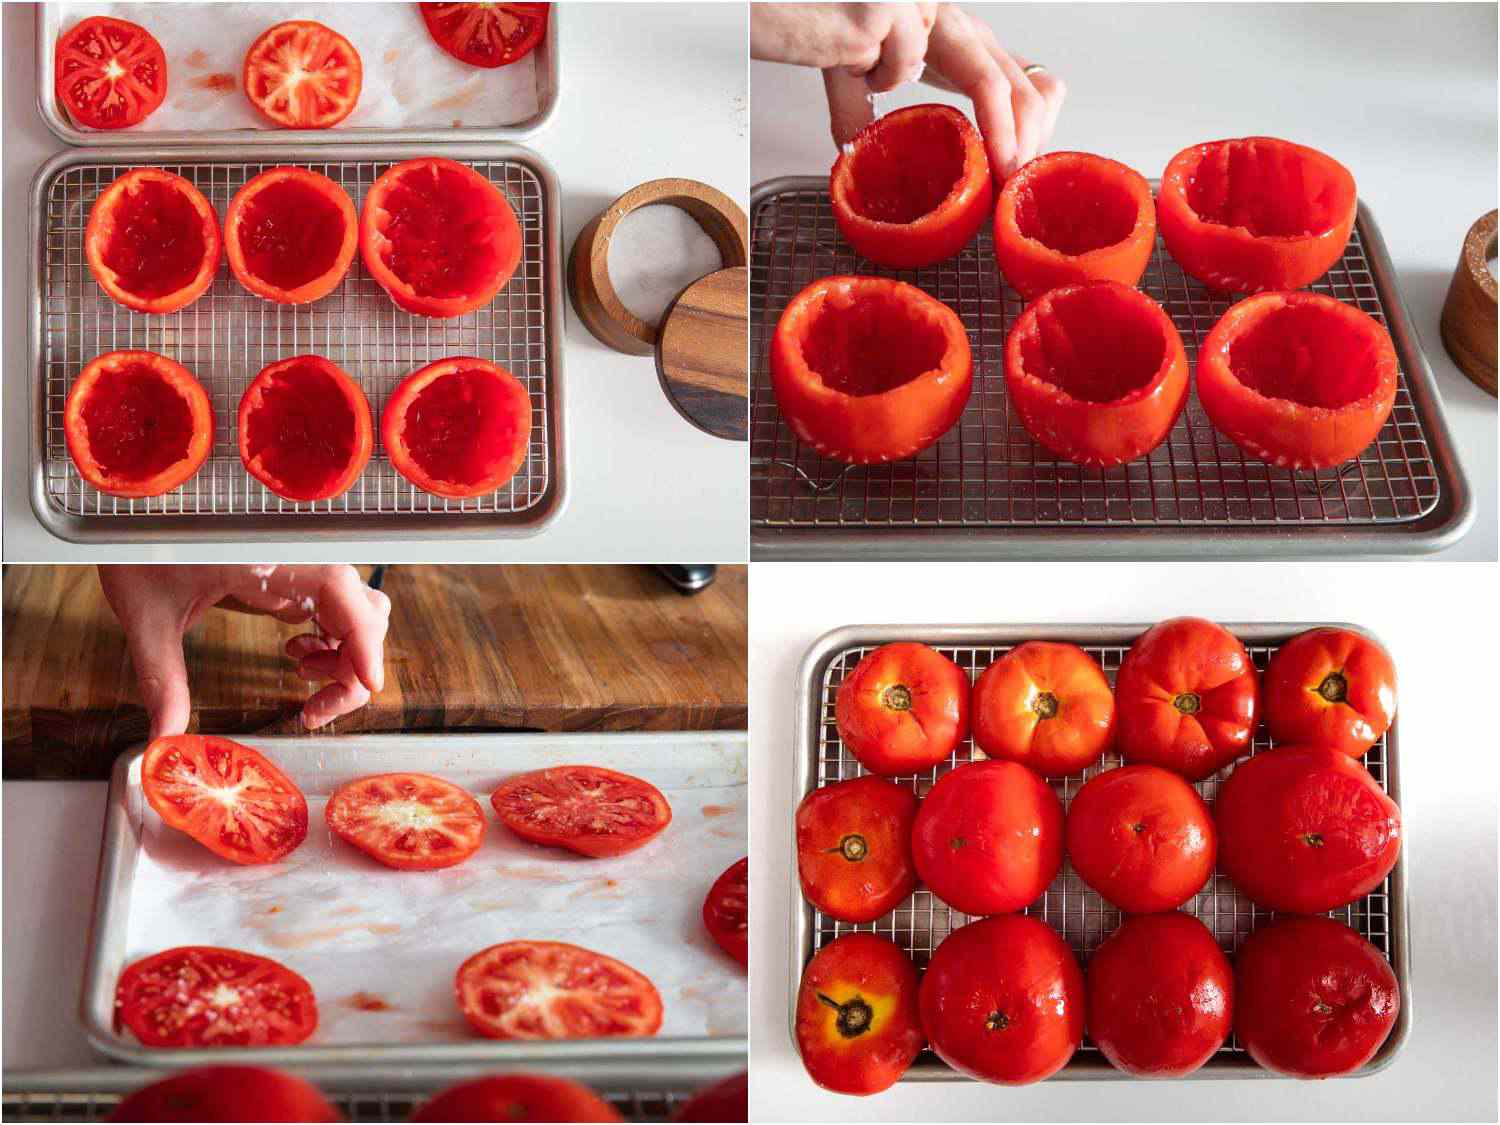 20190903-pomodoro-al-riso-joel-russo-tomato-prepping